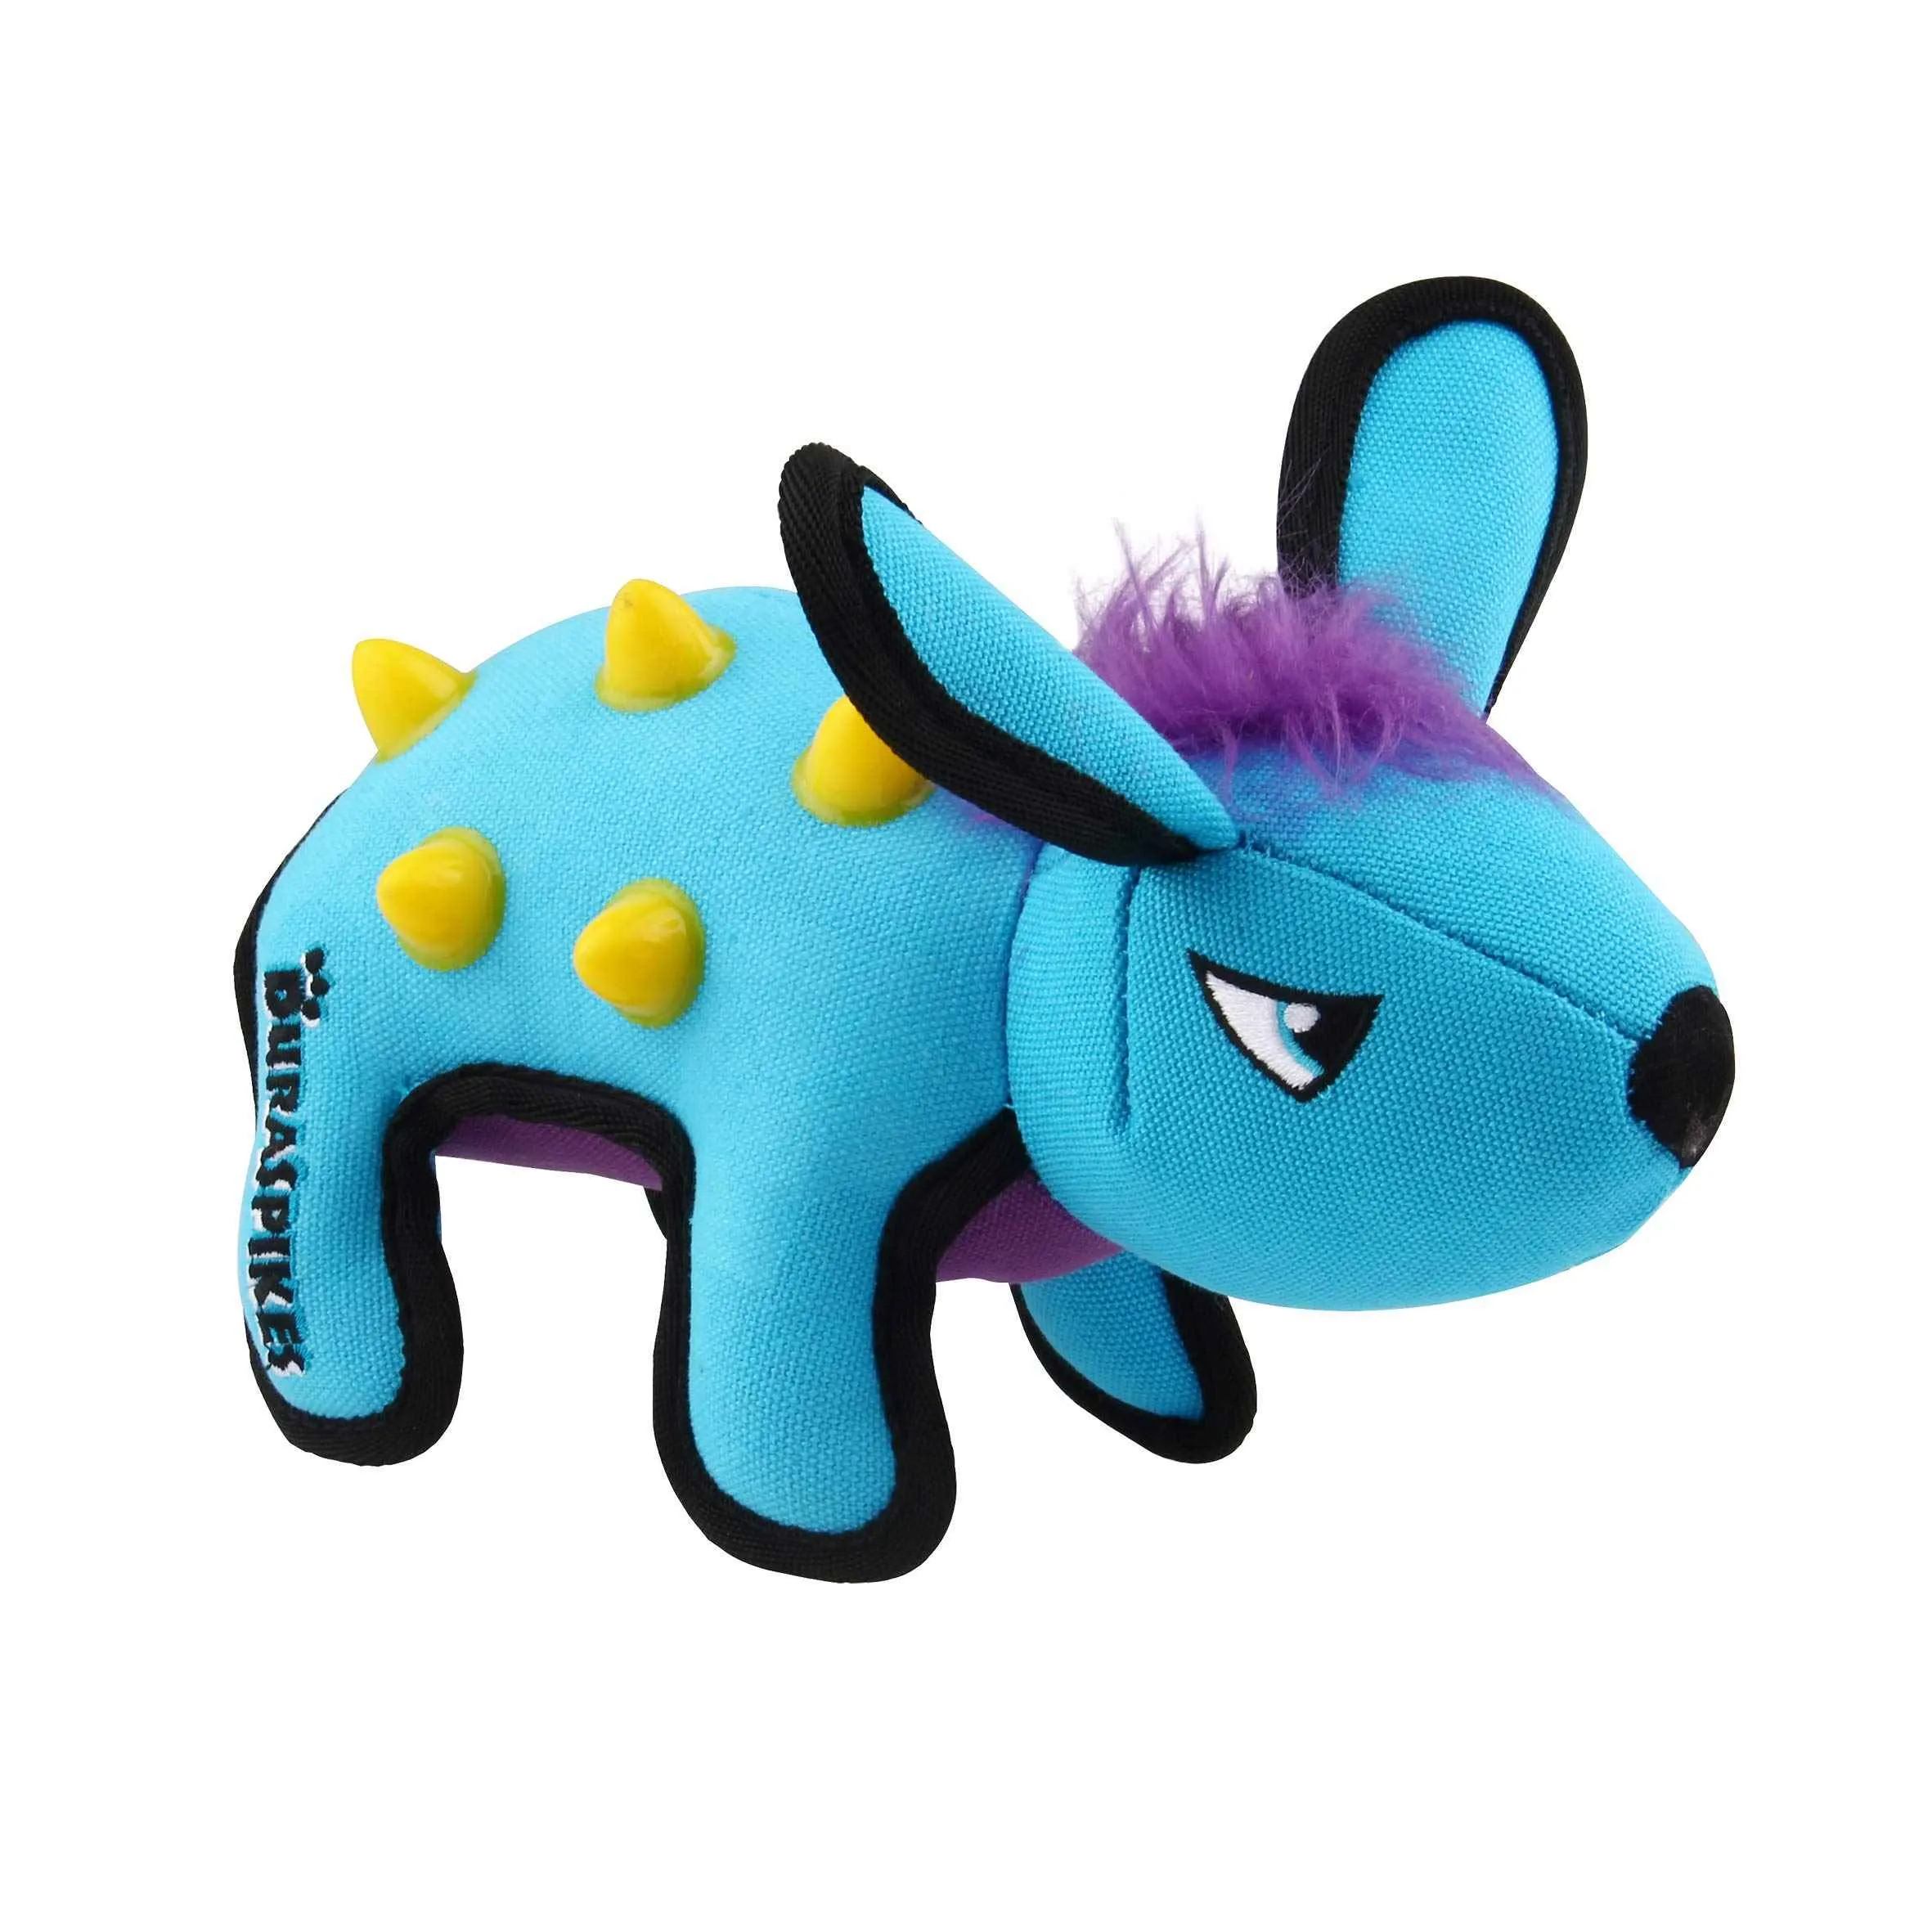 GiGwi duraspikes extra odolná hračka králik svetlo modrý 1×1 ks